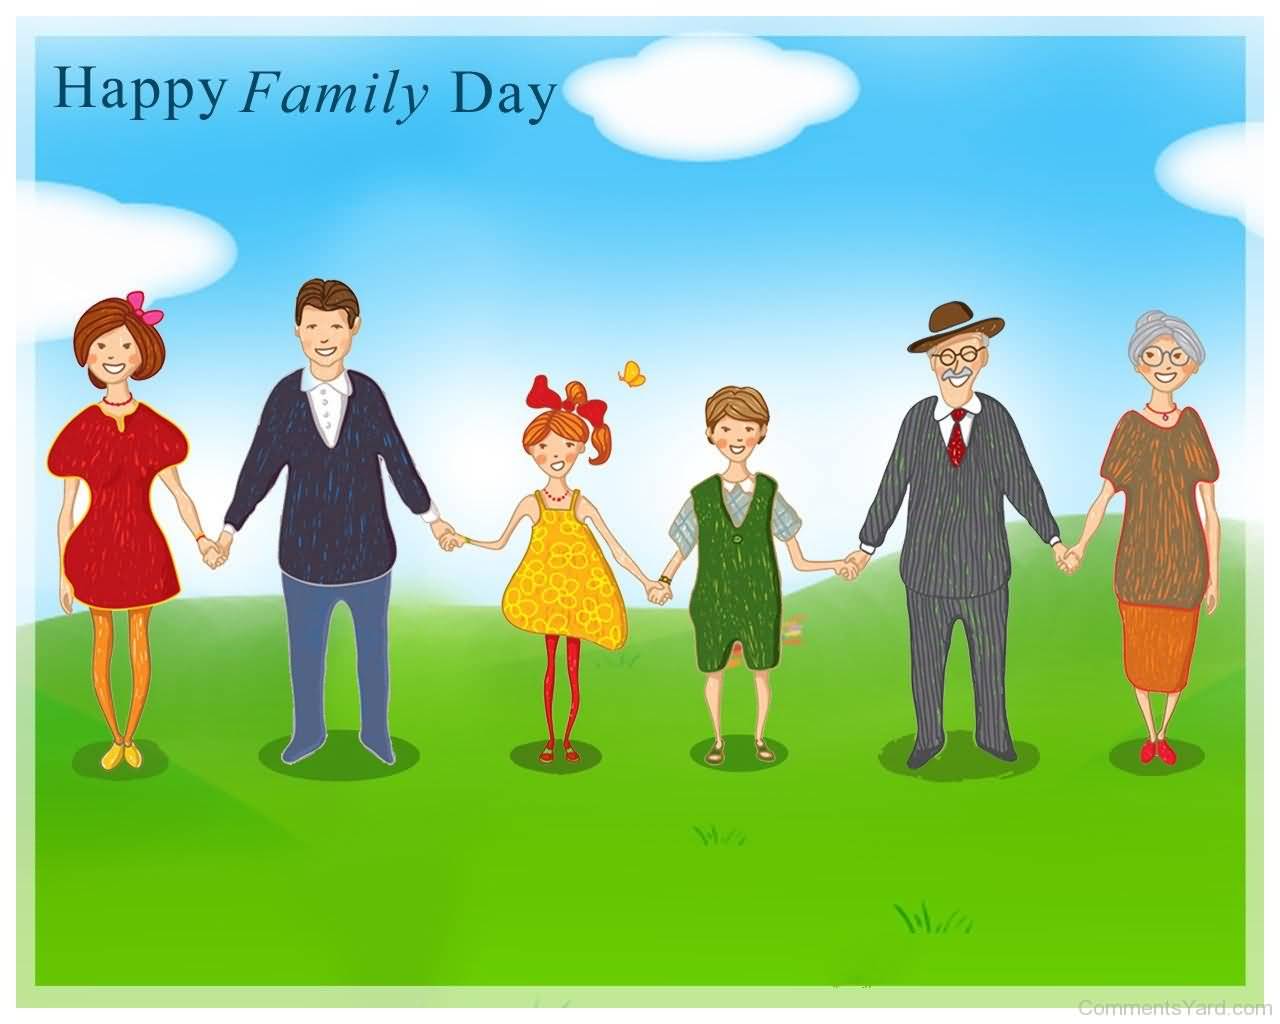 Happy Family Day Family Photo